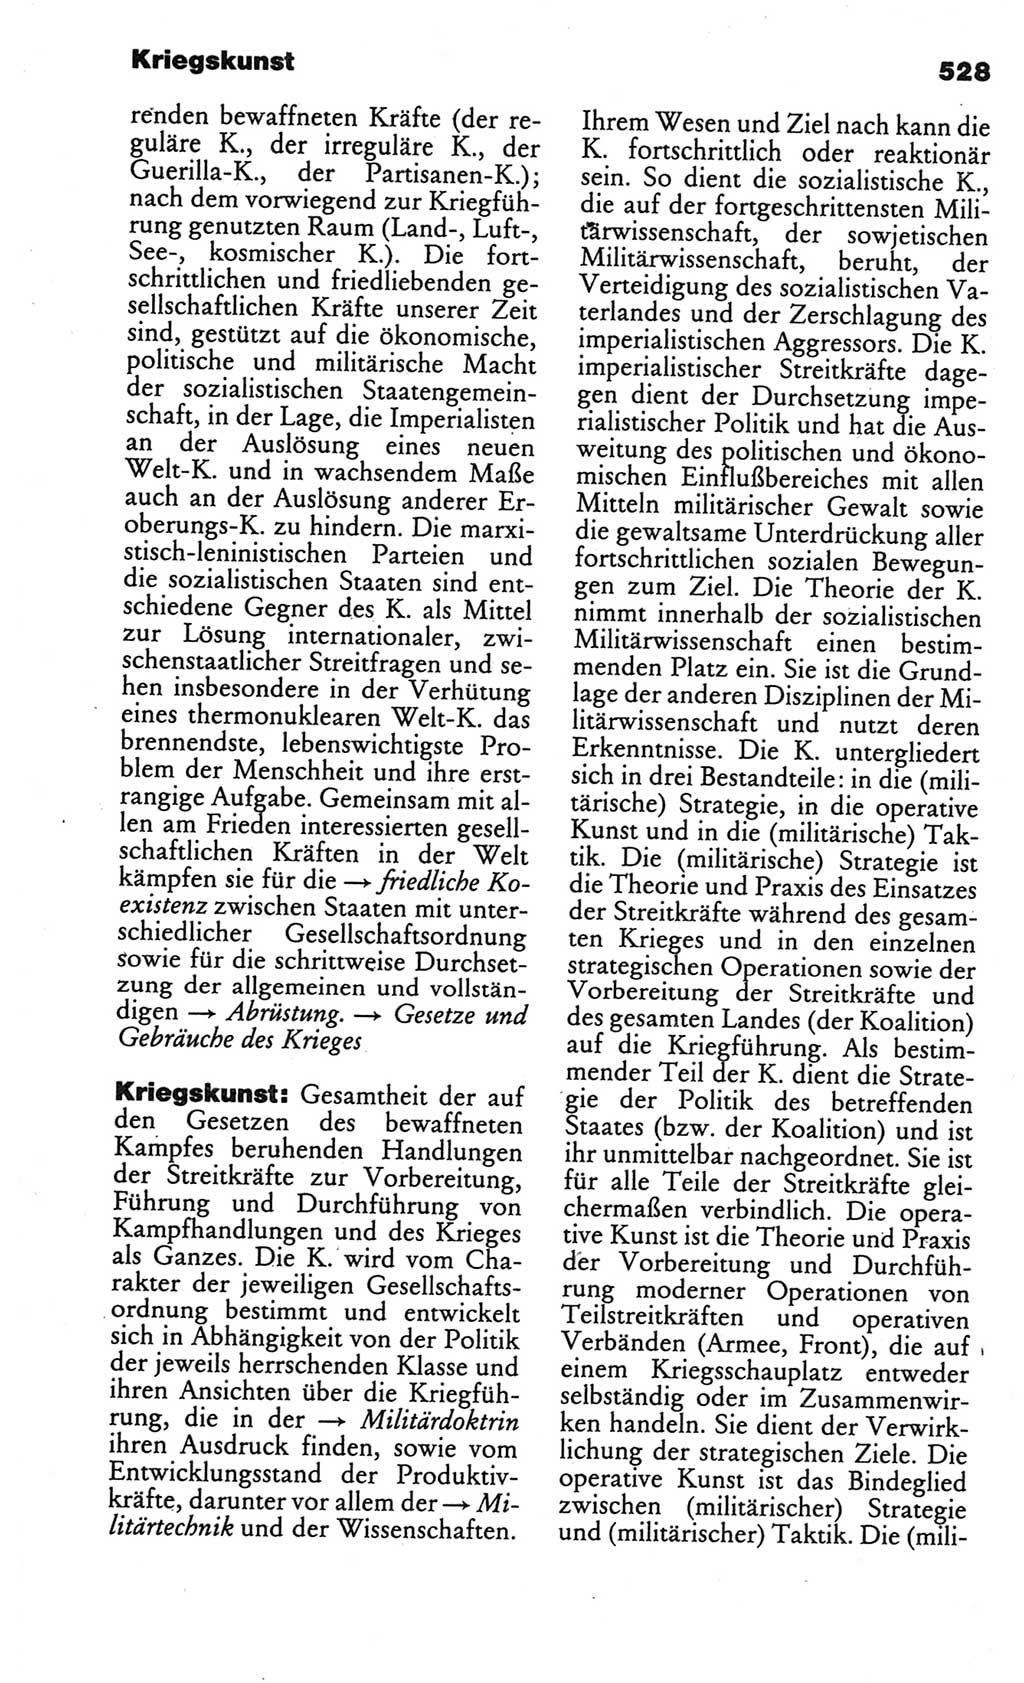 Kleines politisches Wörterbuch [Deutsche Demokratische Republik (DDR)] 1986, Seite 528 (Kl. pol. Wb. DDR 1986, S. 528)